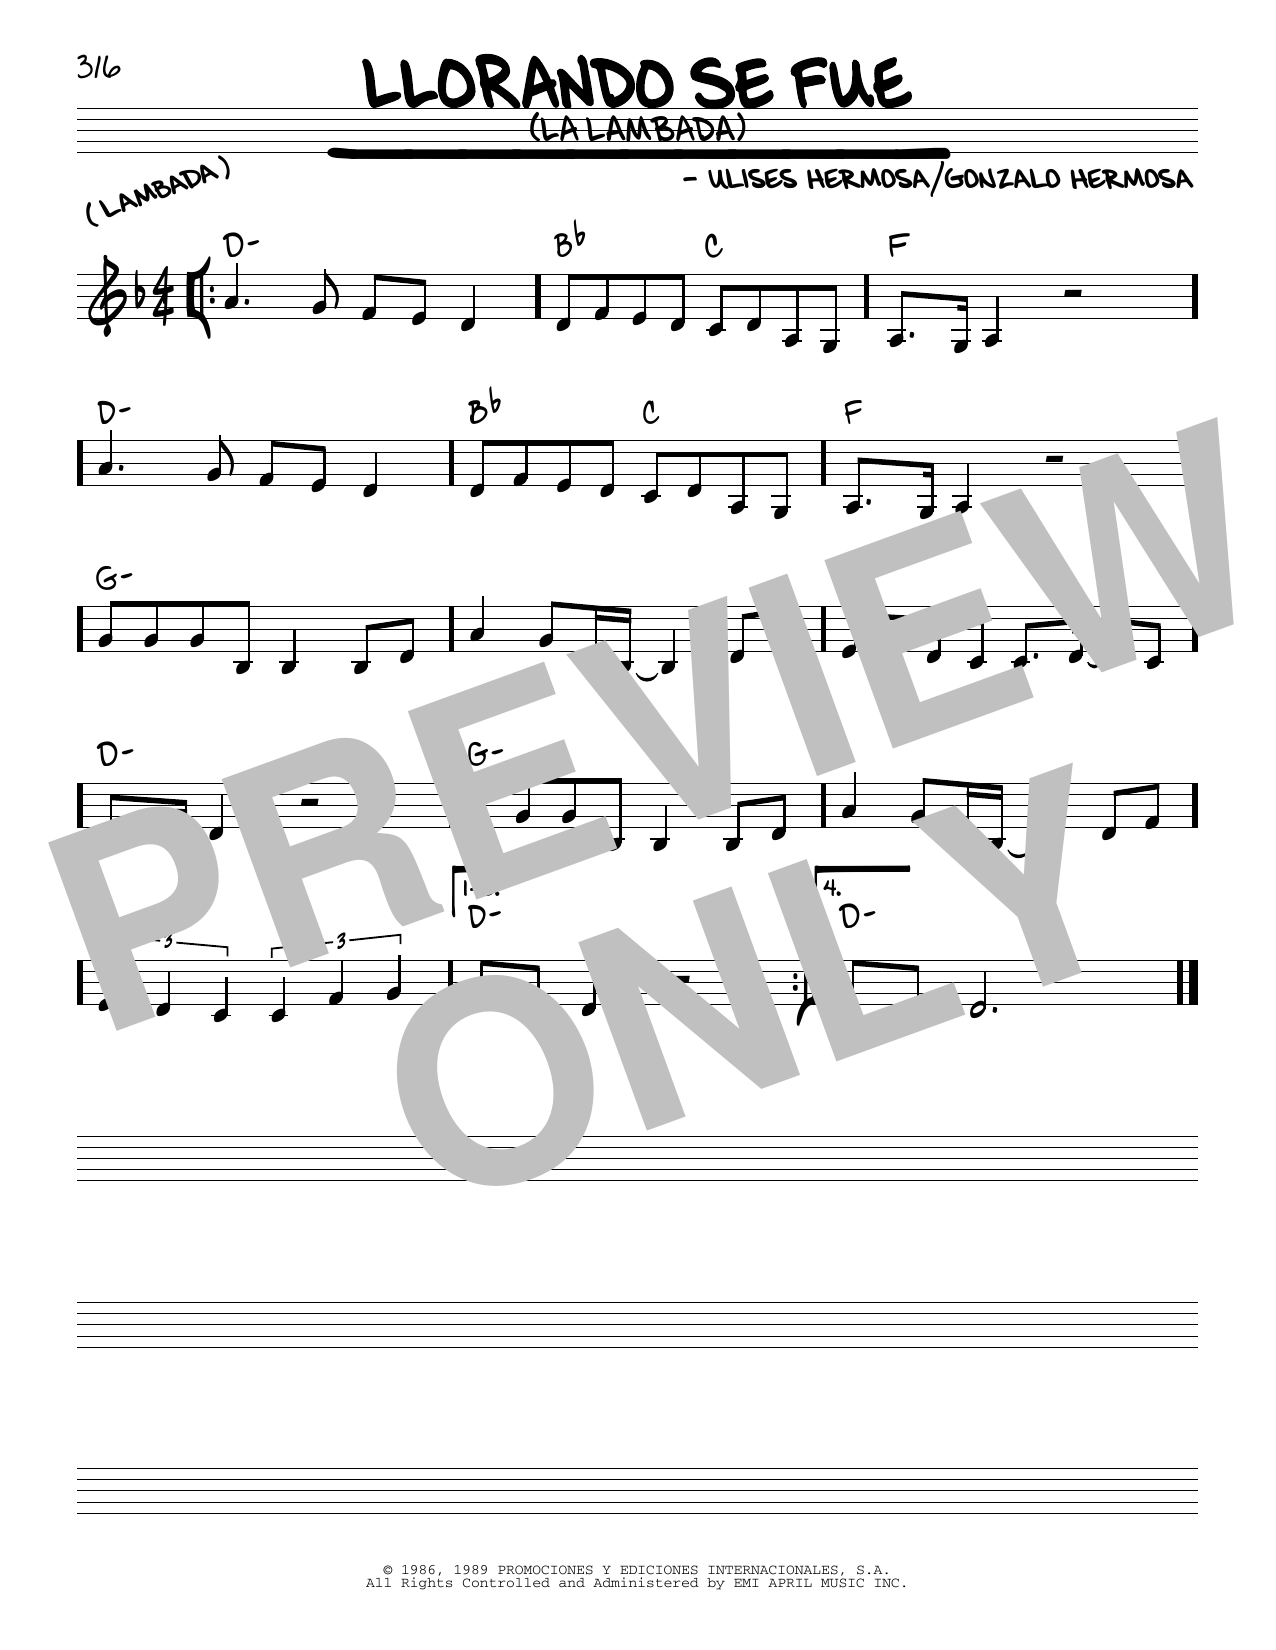 Ulises Hermosa Llorando Se Fue (La Lambada) Sheet Music Notes & Chords for Real Book – Melody & Chords - Download or Print PDF